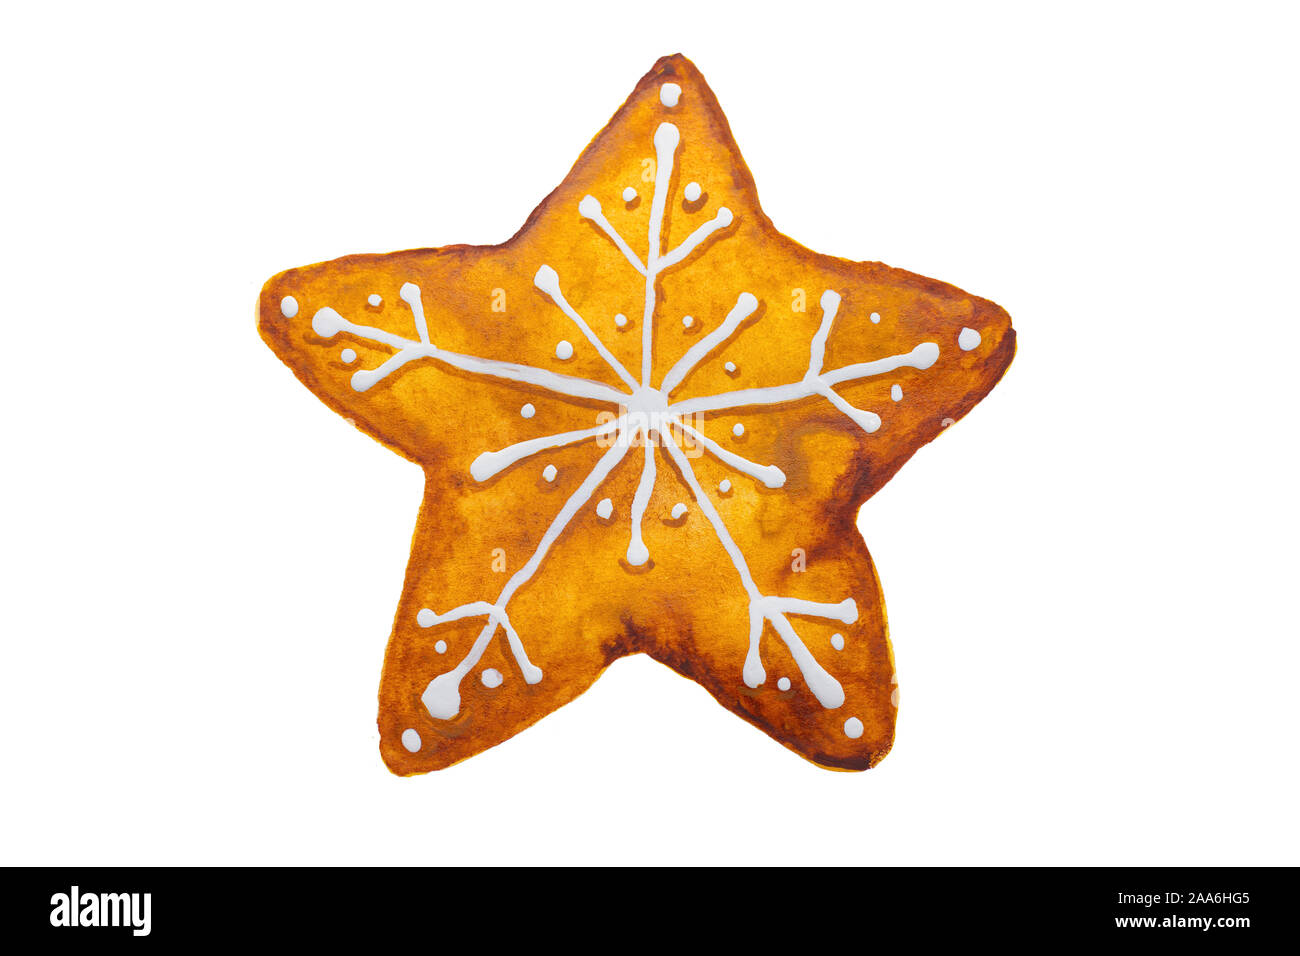 Hand Aquarell Zeichnung von Weihnachten Lebkuchen Schneeflocke Stern auf weißem Hintergrund dargestellt, isoliert Stockfoto